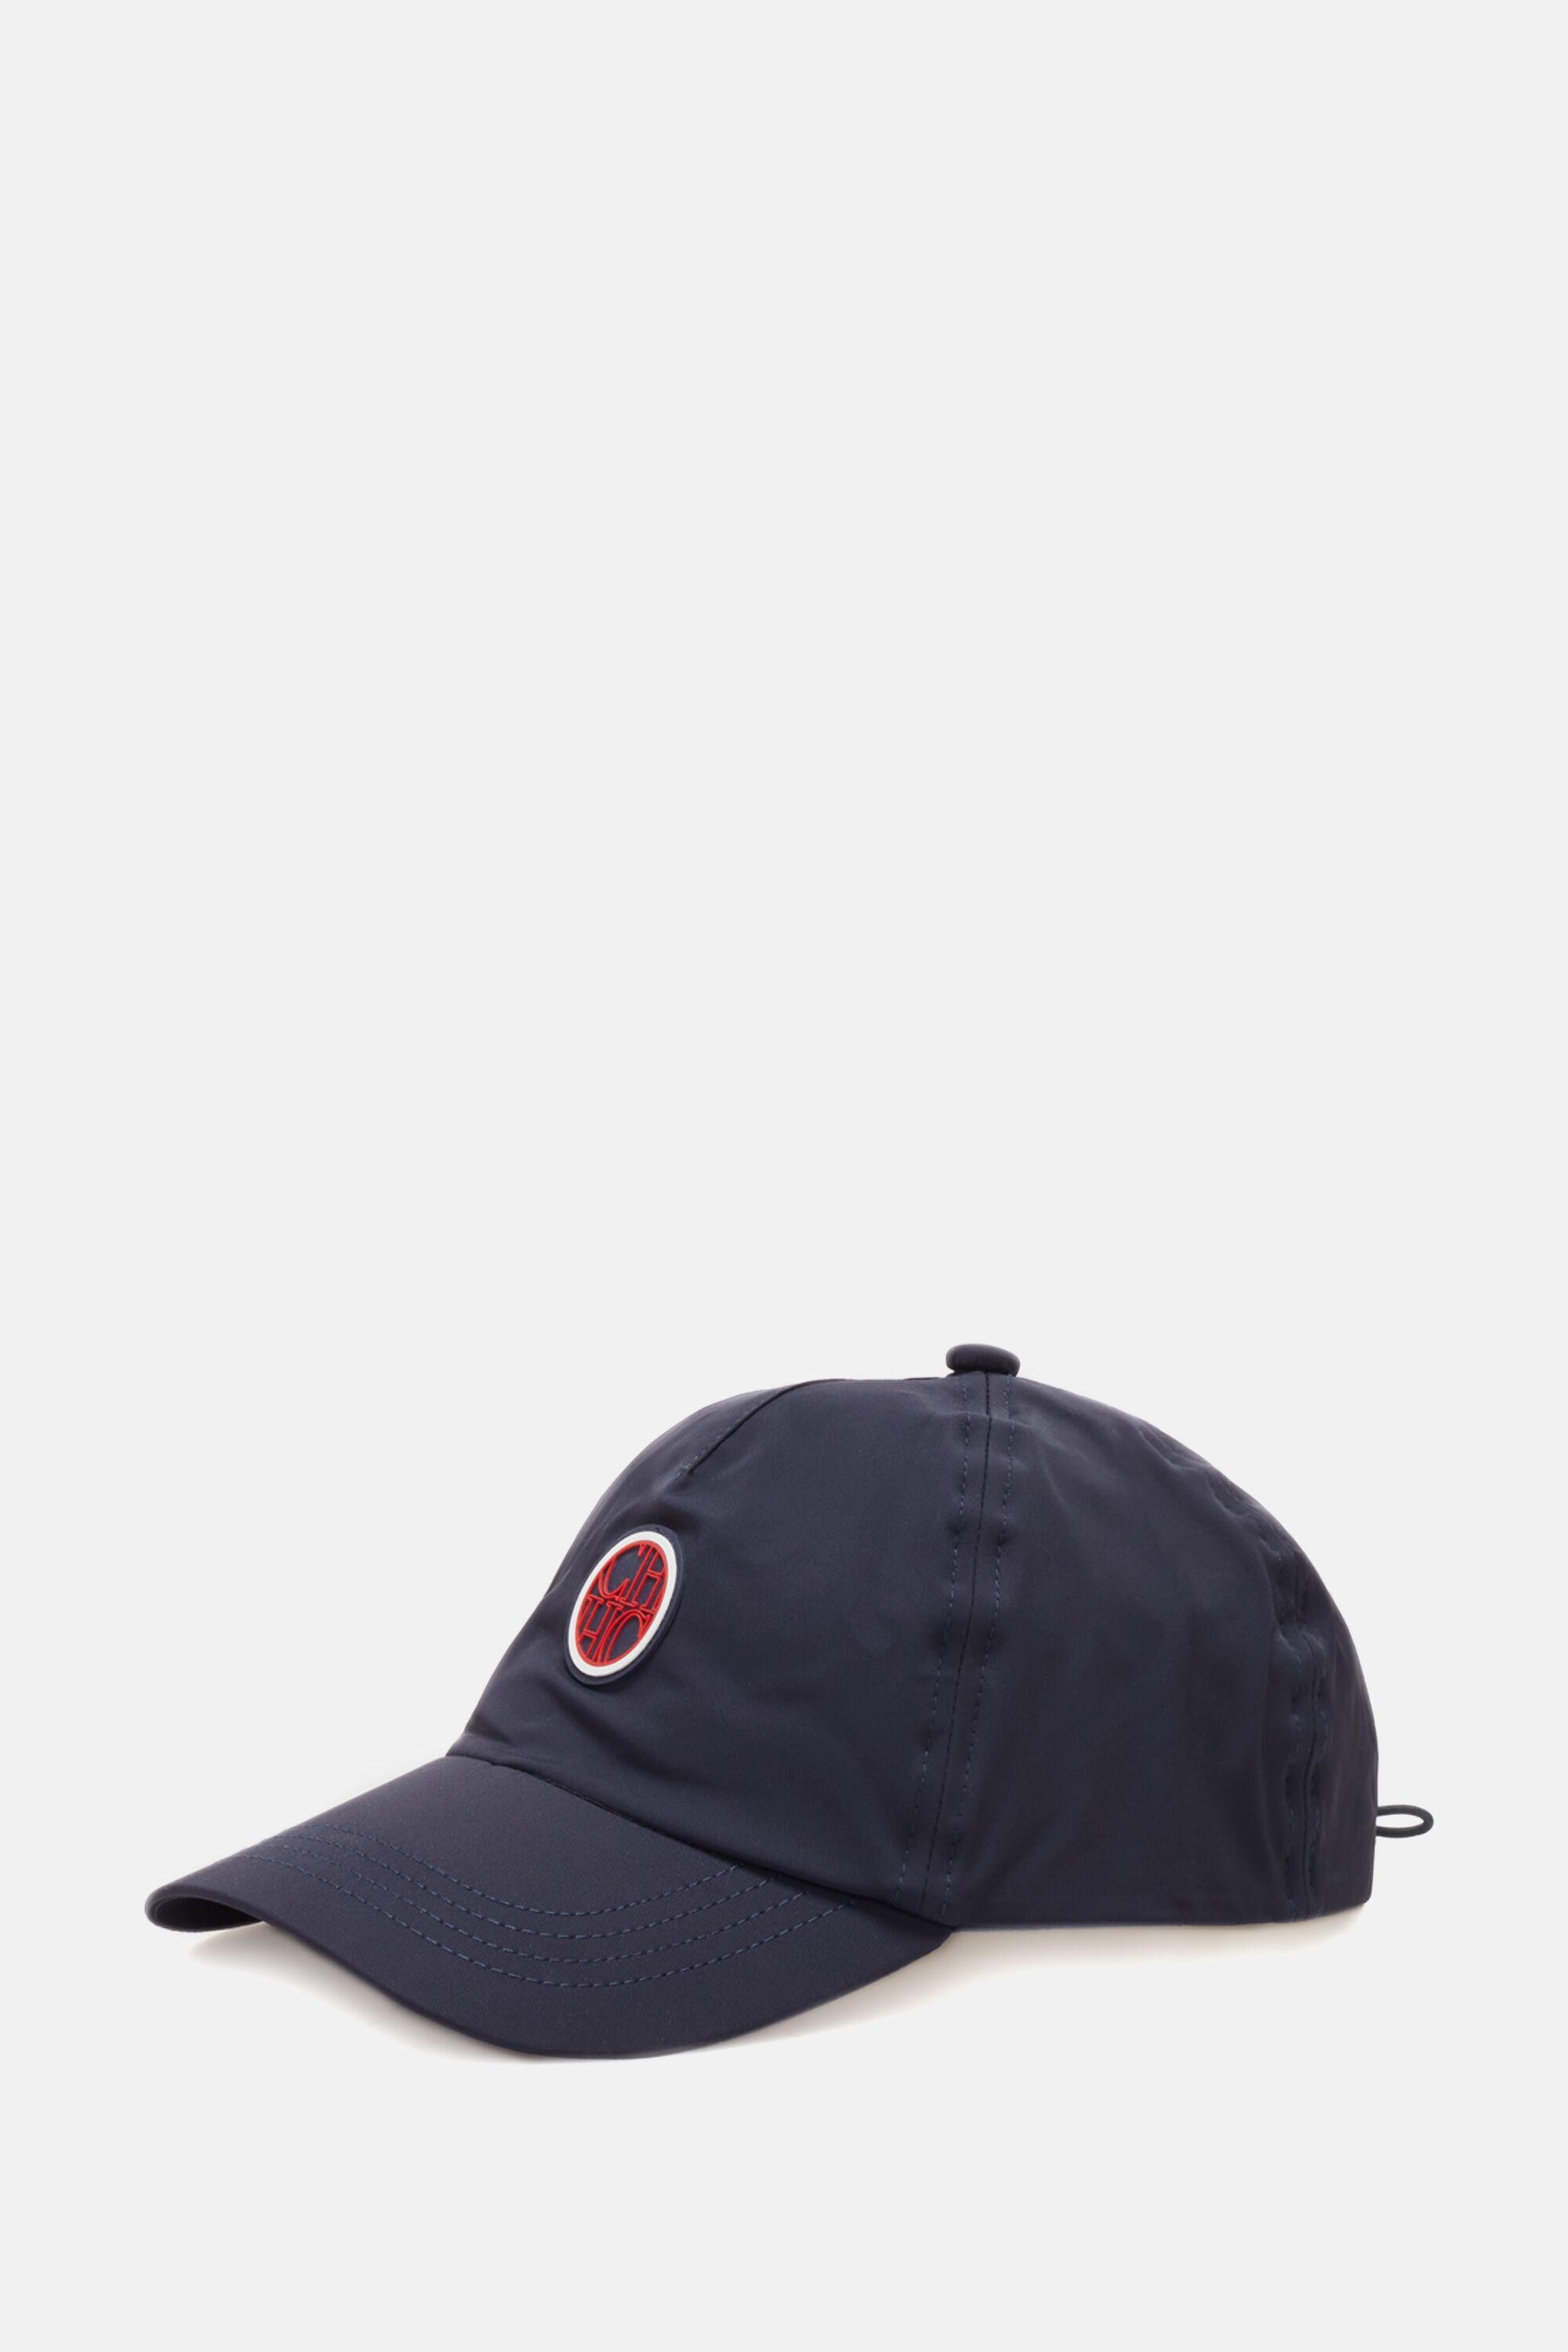 CH Sport baseball cap